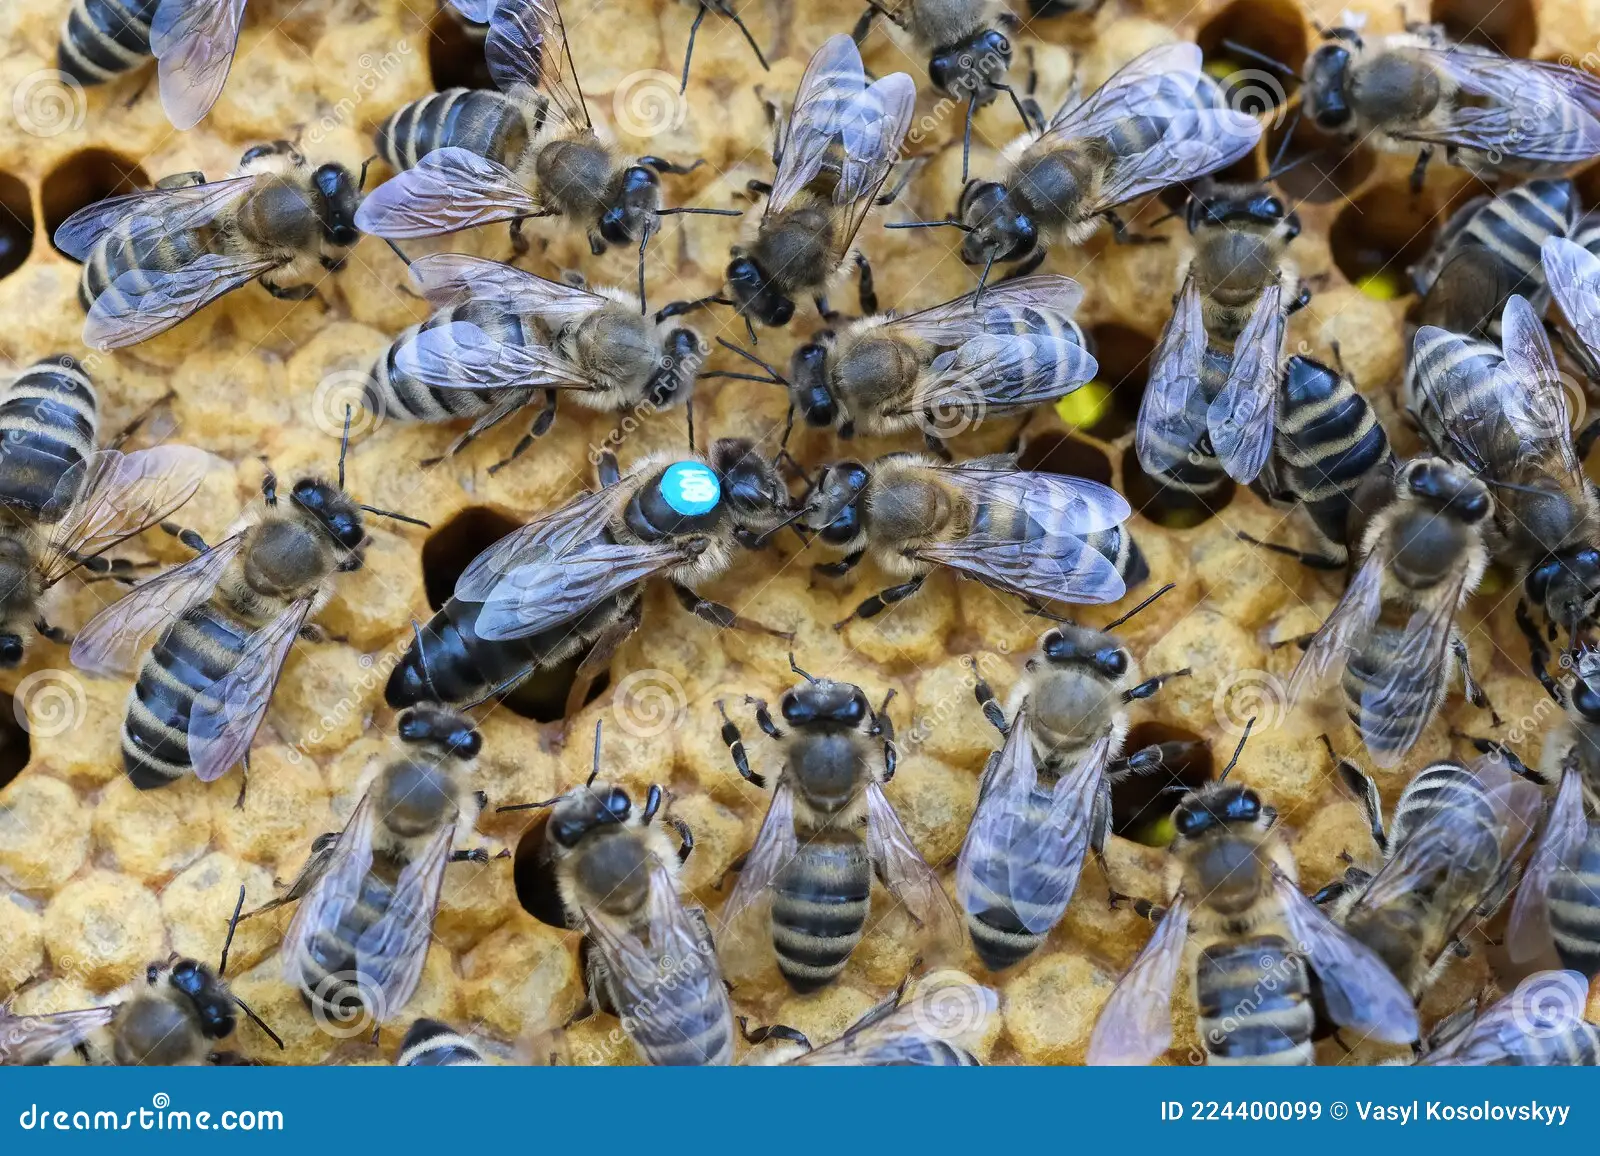 η-βασίλισσα-μέλισσα-περικυκλώνεται-πάντα-από-τις-μέλισσες-που-224400099